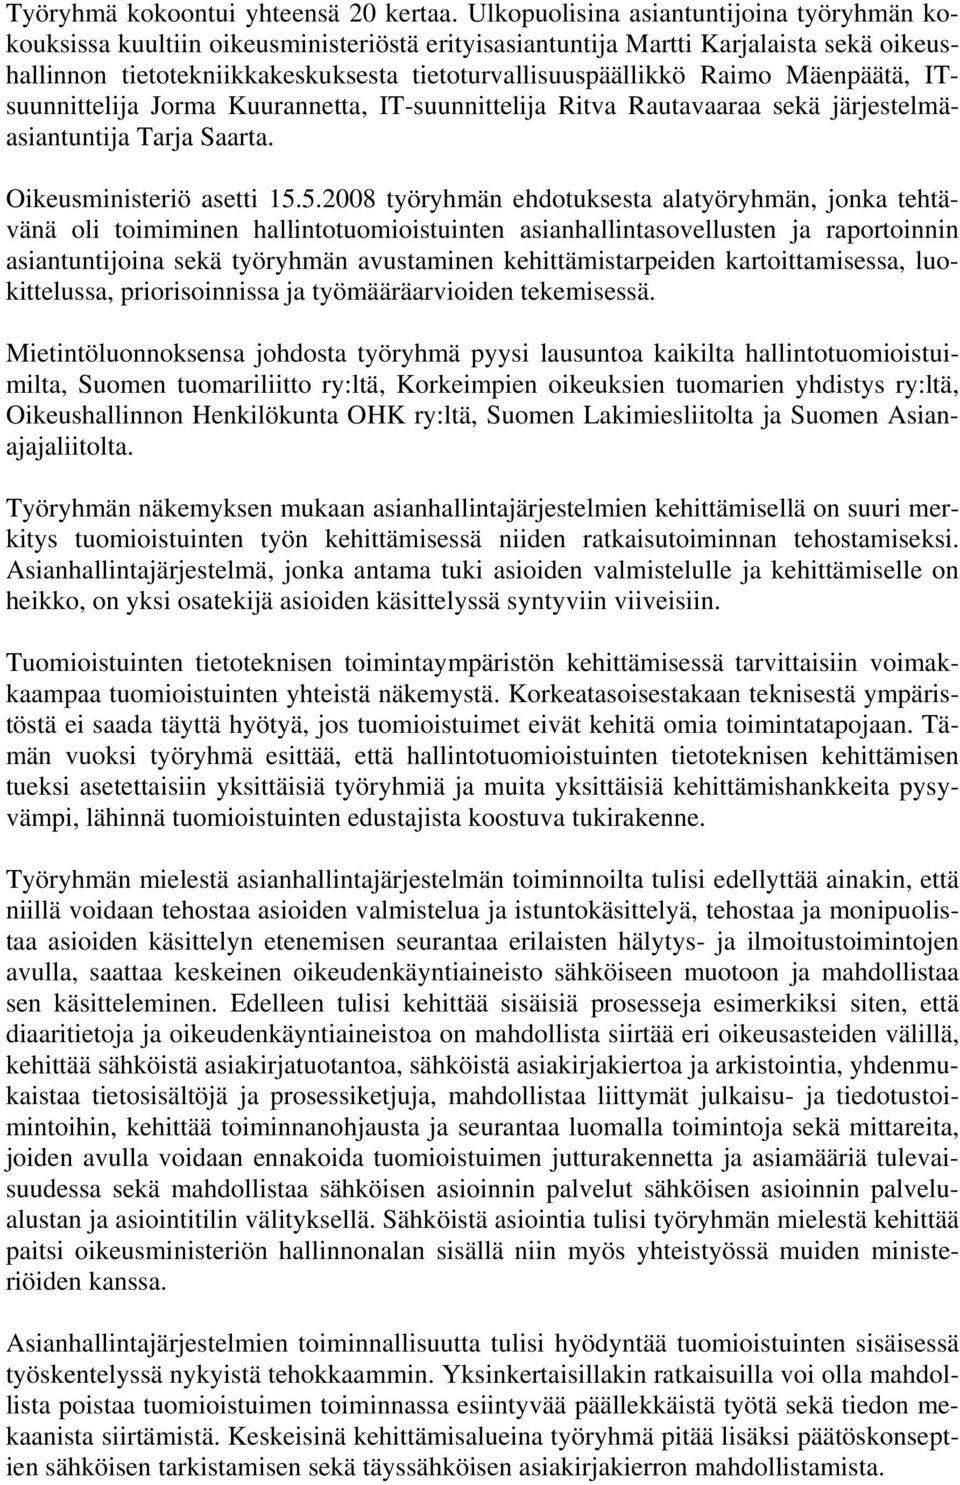 Mäenpäätä, ITsuunnittelija Jorma Kuurannetta, IT-suunnittelija Ritva Rautavaaraa sekä järjestelmäasiantuntija Tarja Saarta. Oikeusministeriö asetti 15.